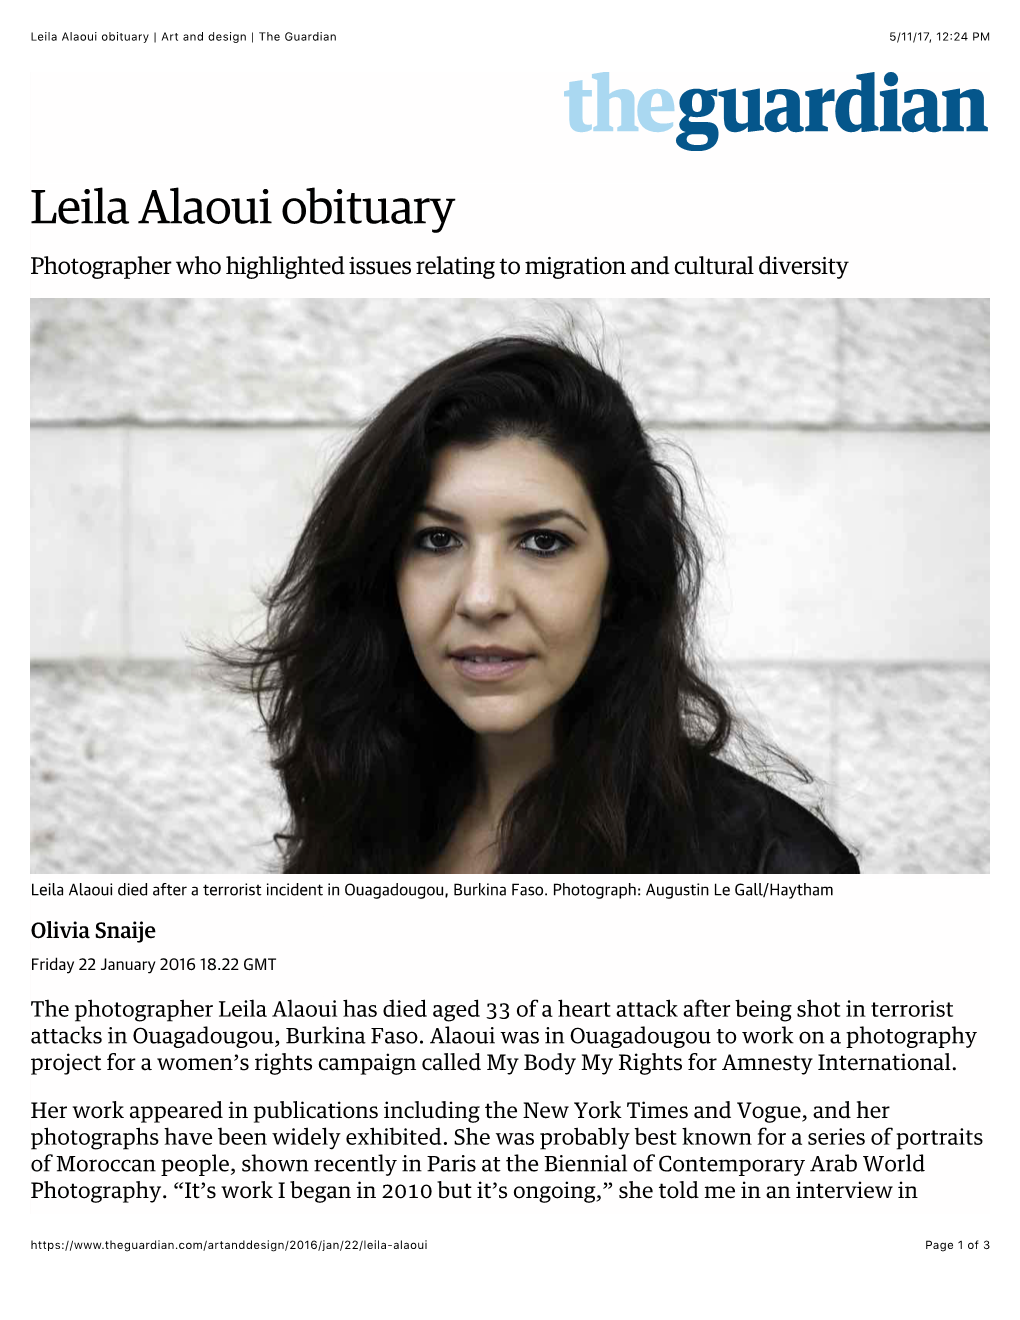 Leila Alaoui Obituary | Art and Design | the Guardian 5/11/17, 12:24 PM